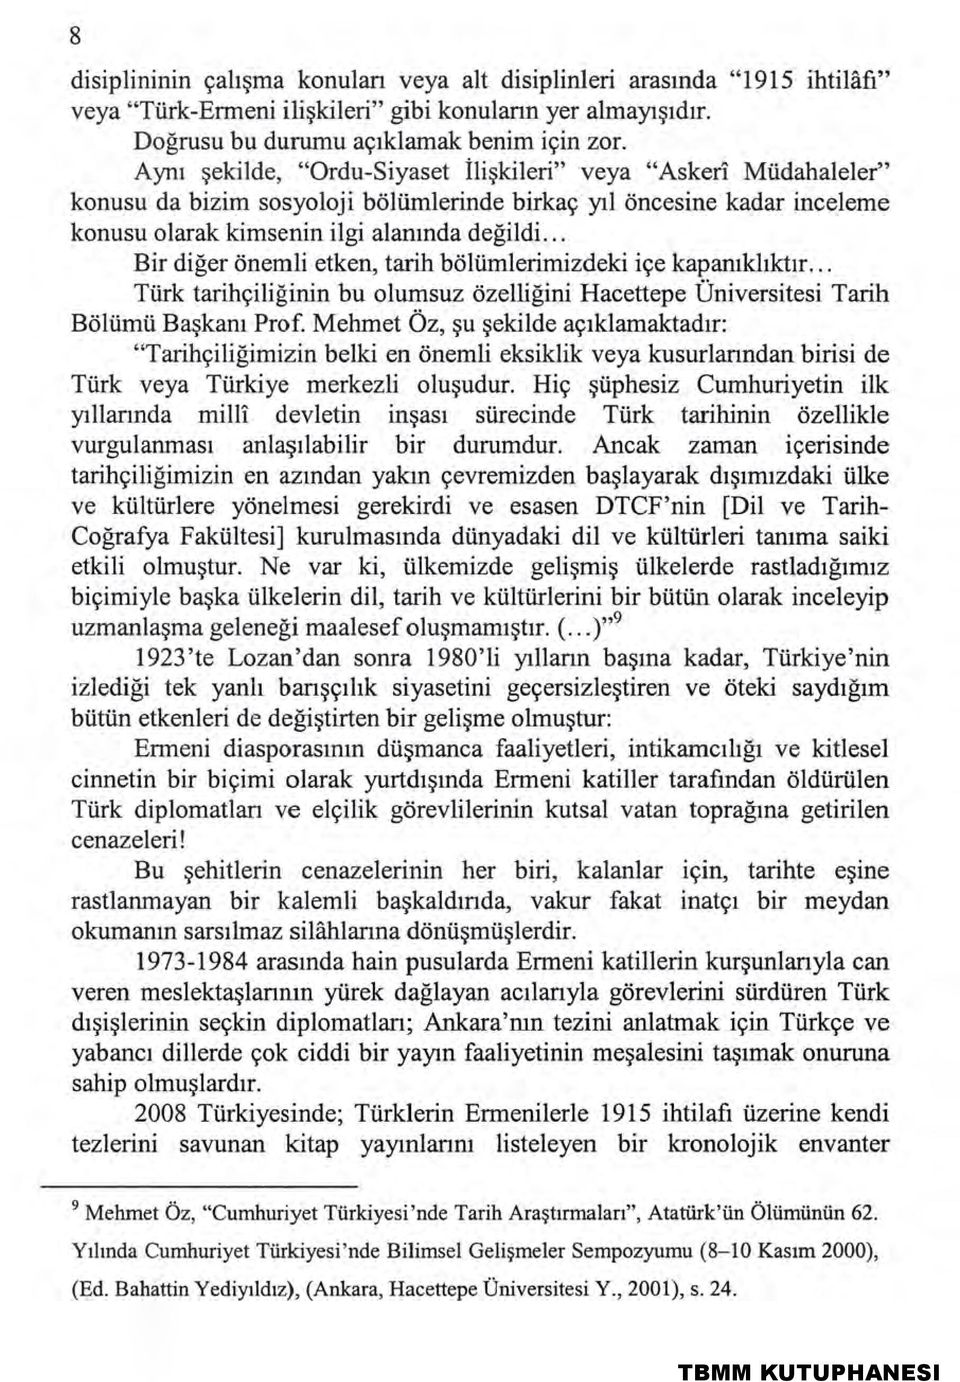 .. Bir diğer önemli etken, tarih bölümlerimizdeki içe kapanıklıktır... Türk tarihçiliğinin bu olumsuz özelliğini Hacettepe Üniversitesi Tarih Bölümü Başkanı Prof.